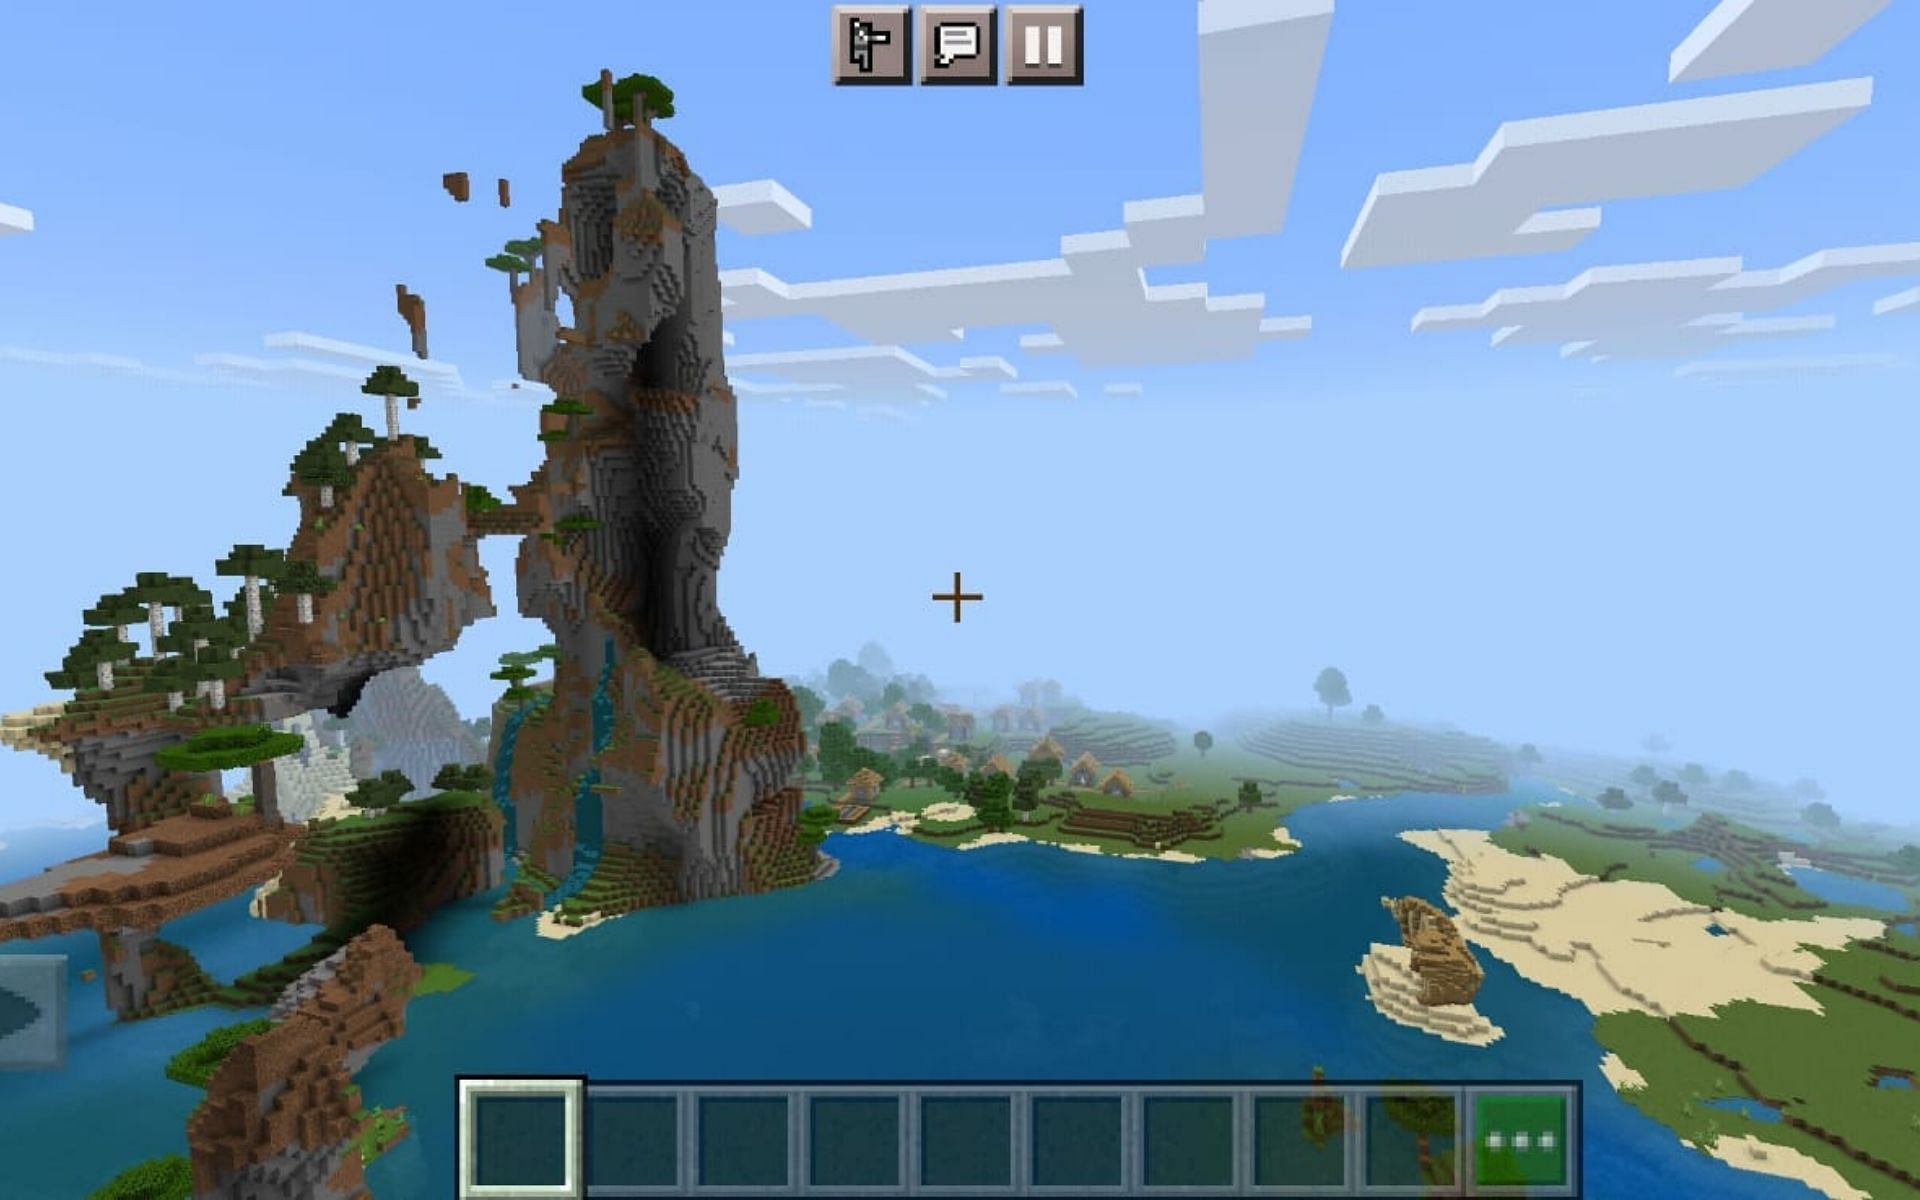 تفرخ جميل بجبال ممزقة وقرية شاسعة وحطام سفينة (الصورة من Minecraft)